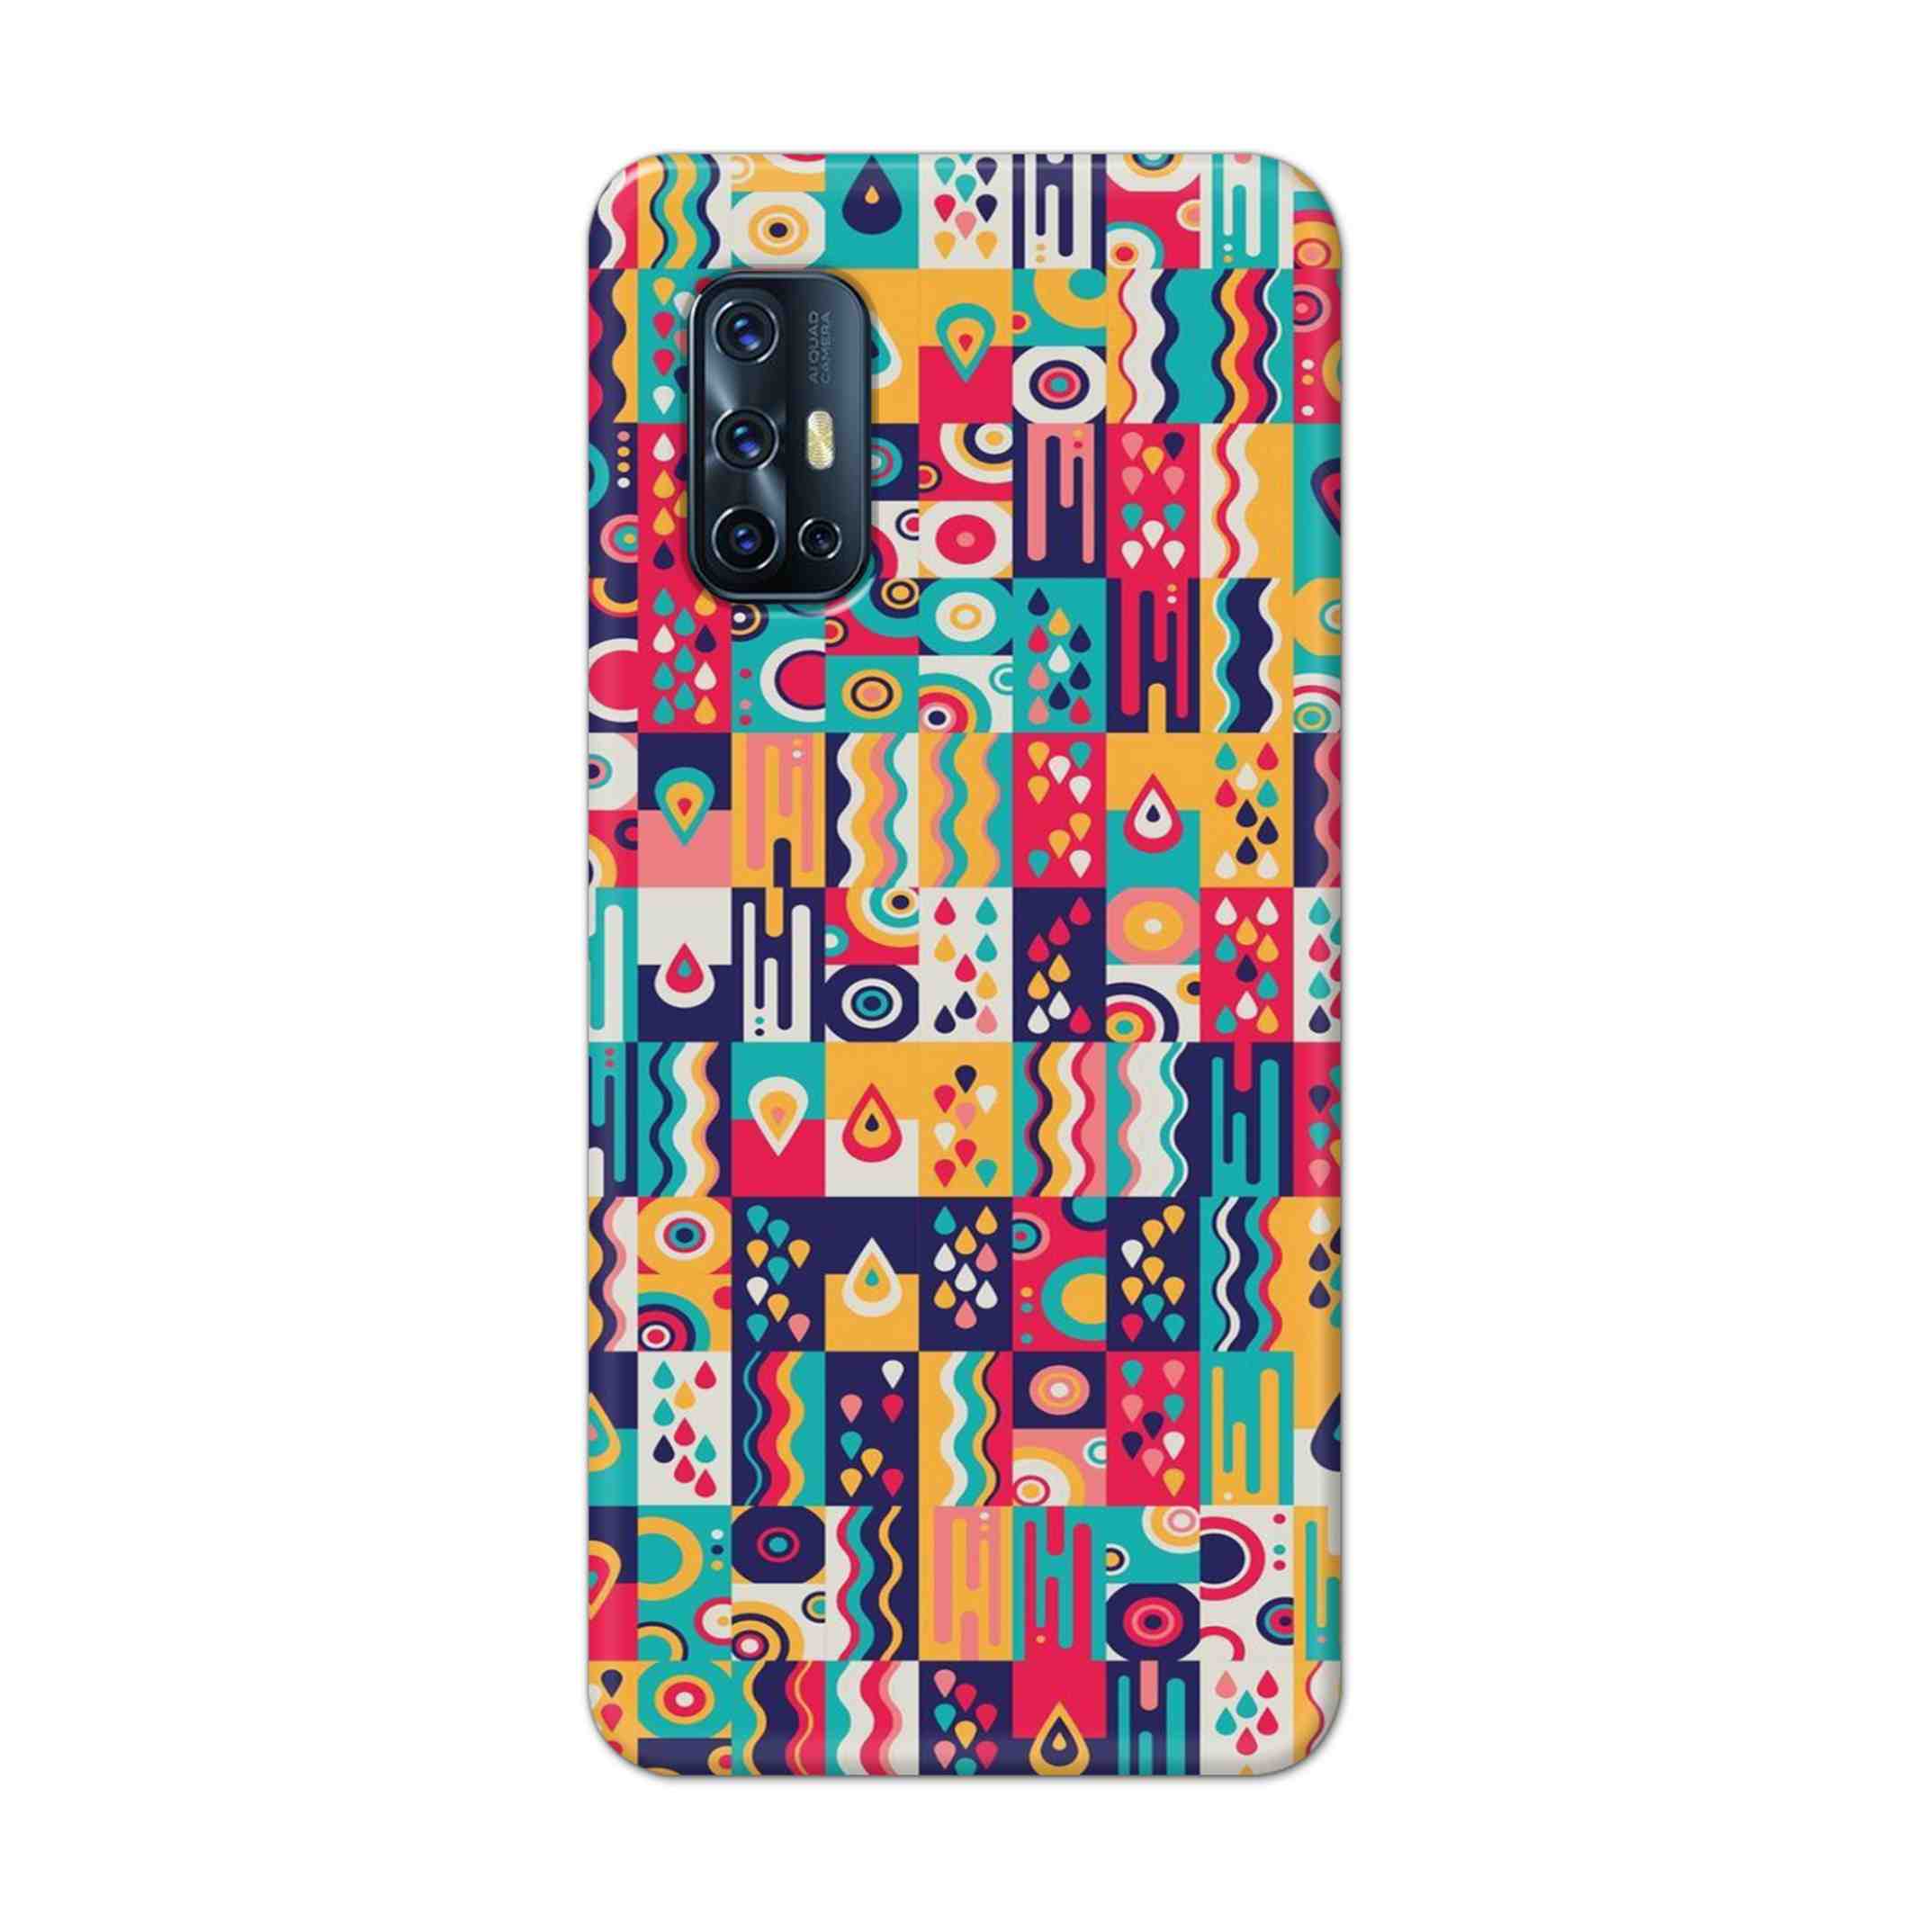 Buy Art Hard Back Mobile Phone Case Cover For Vivo V17 Online